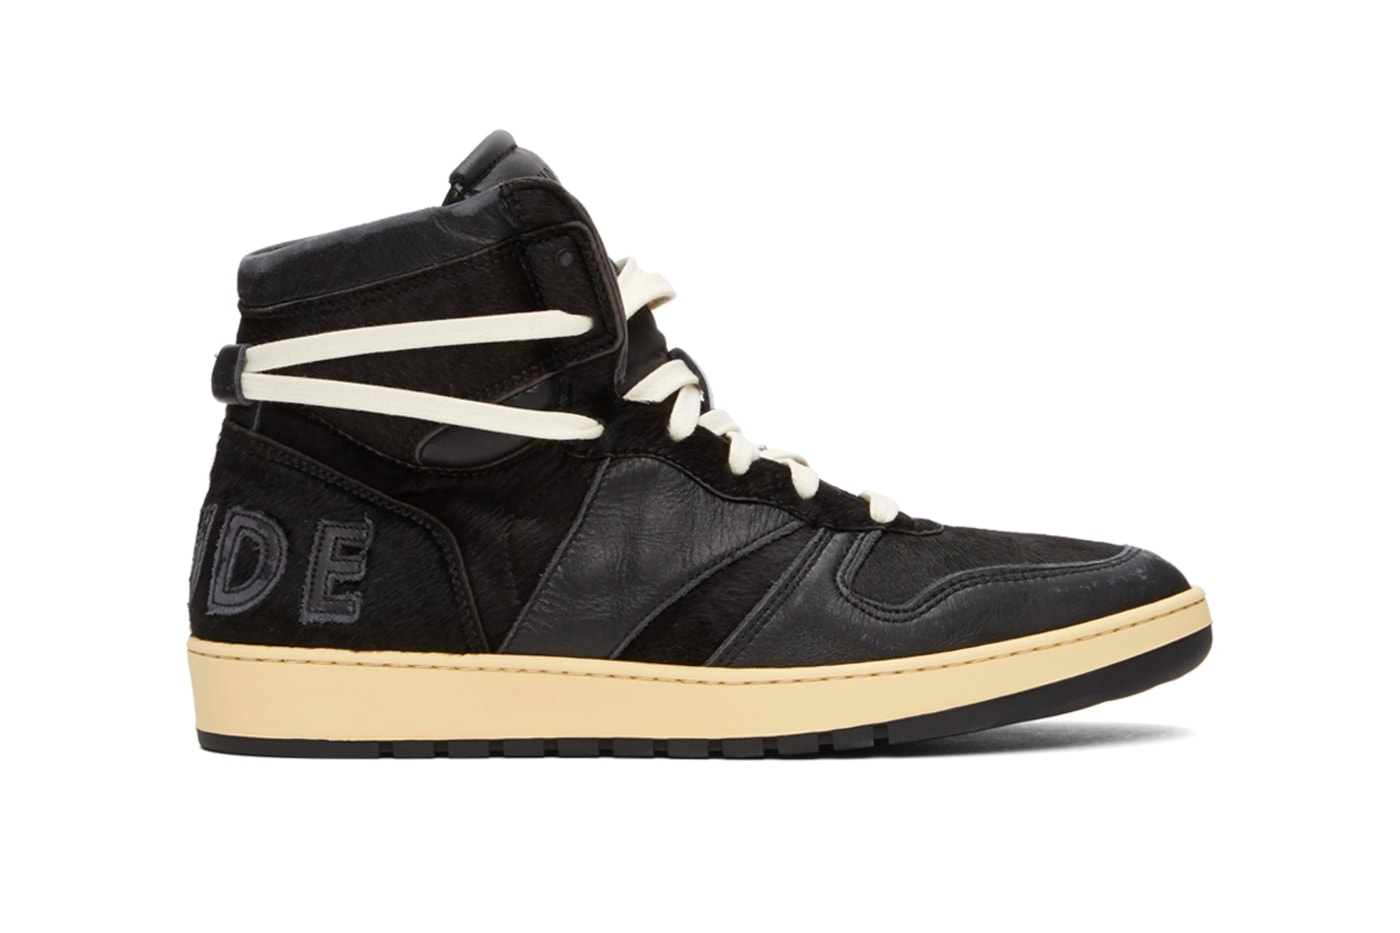 RHUDE RHECESS-HI Sneakers Black Release Buy Price Info